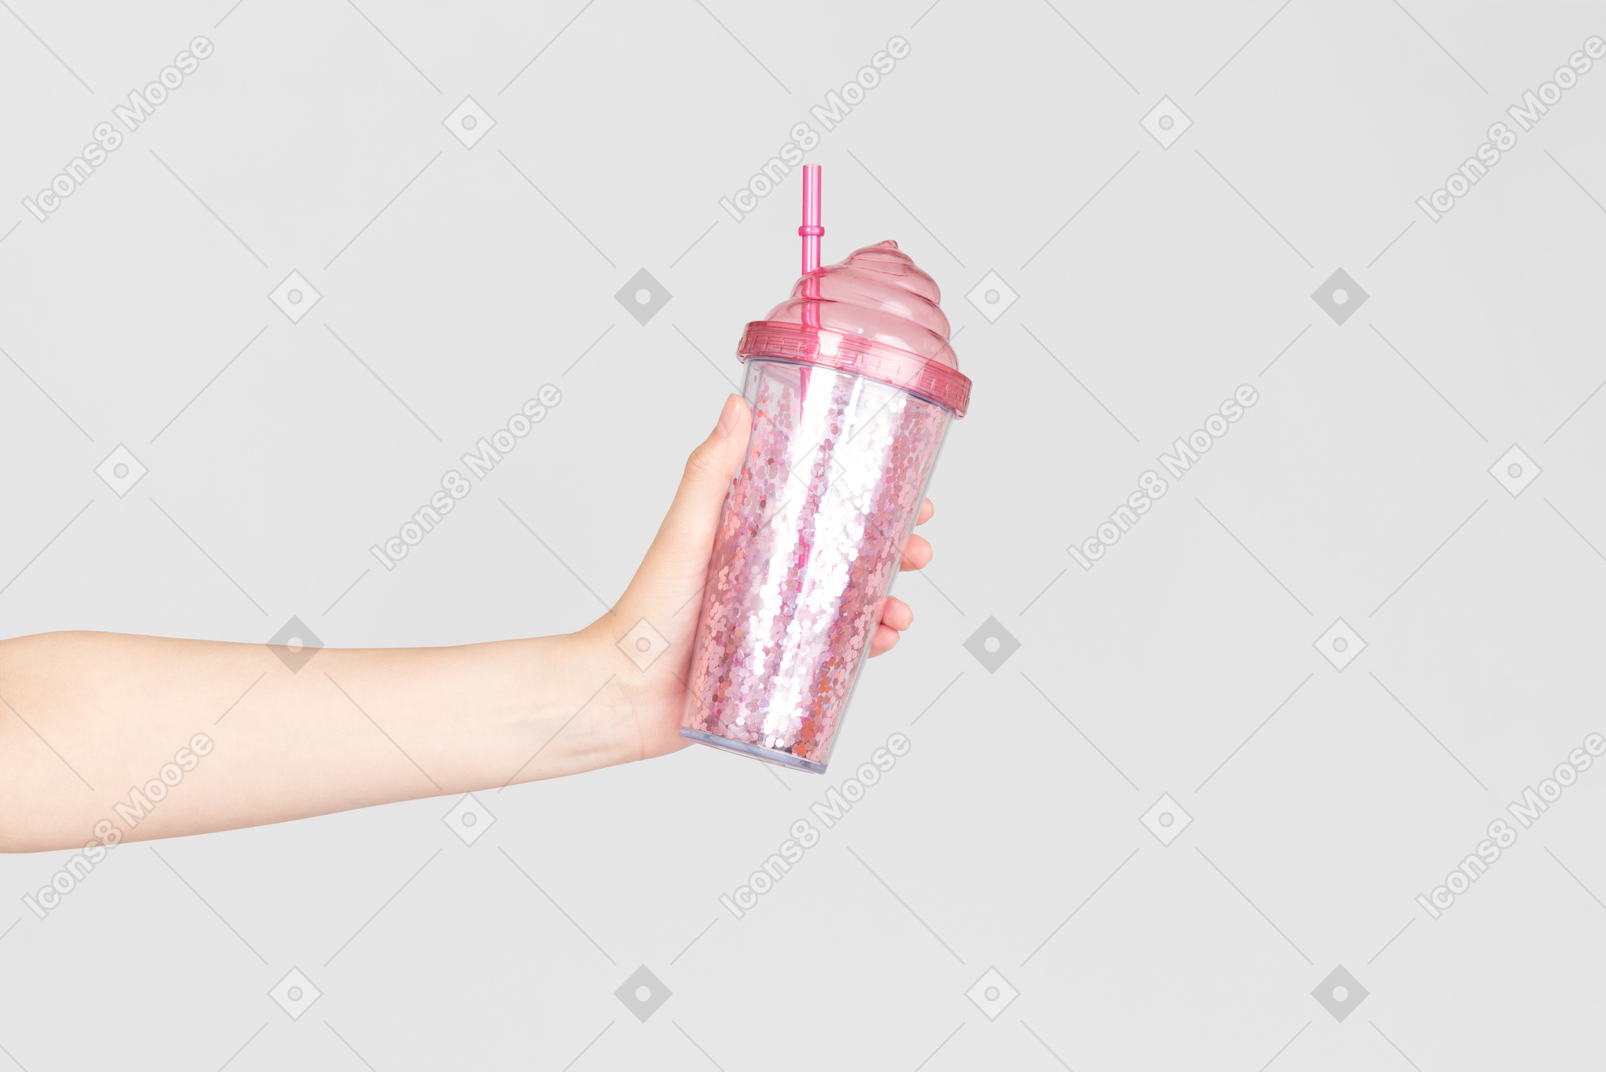 Weibliche hand, die rosa plastikbecher hält